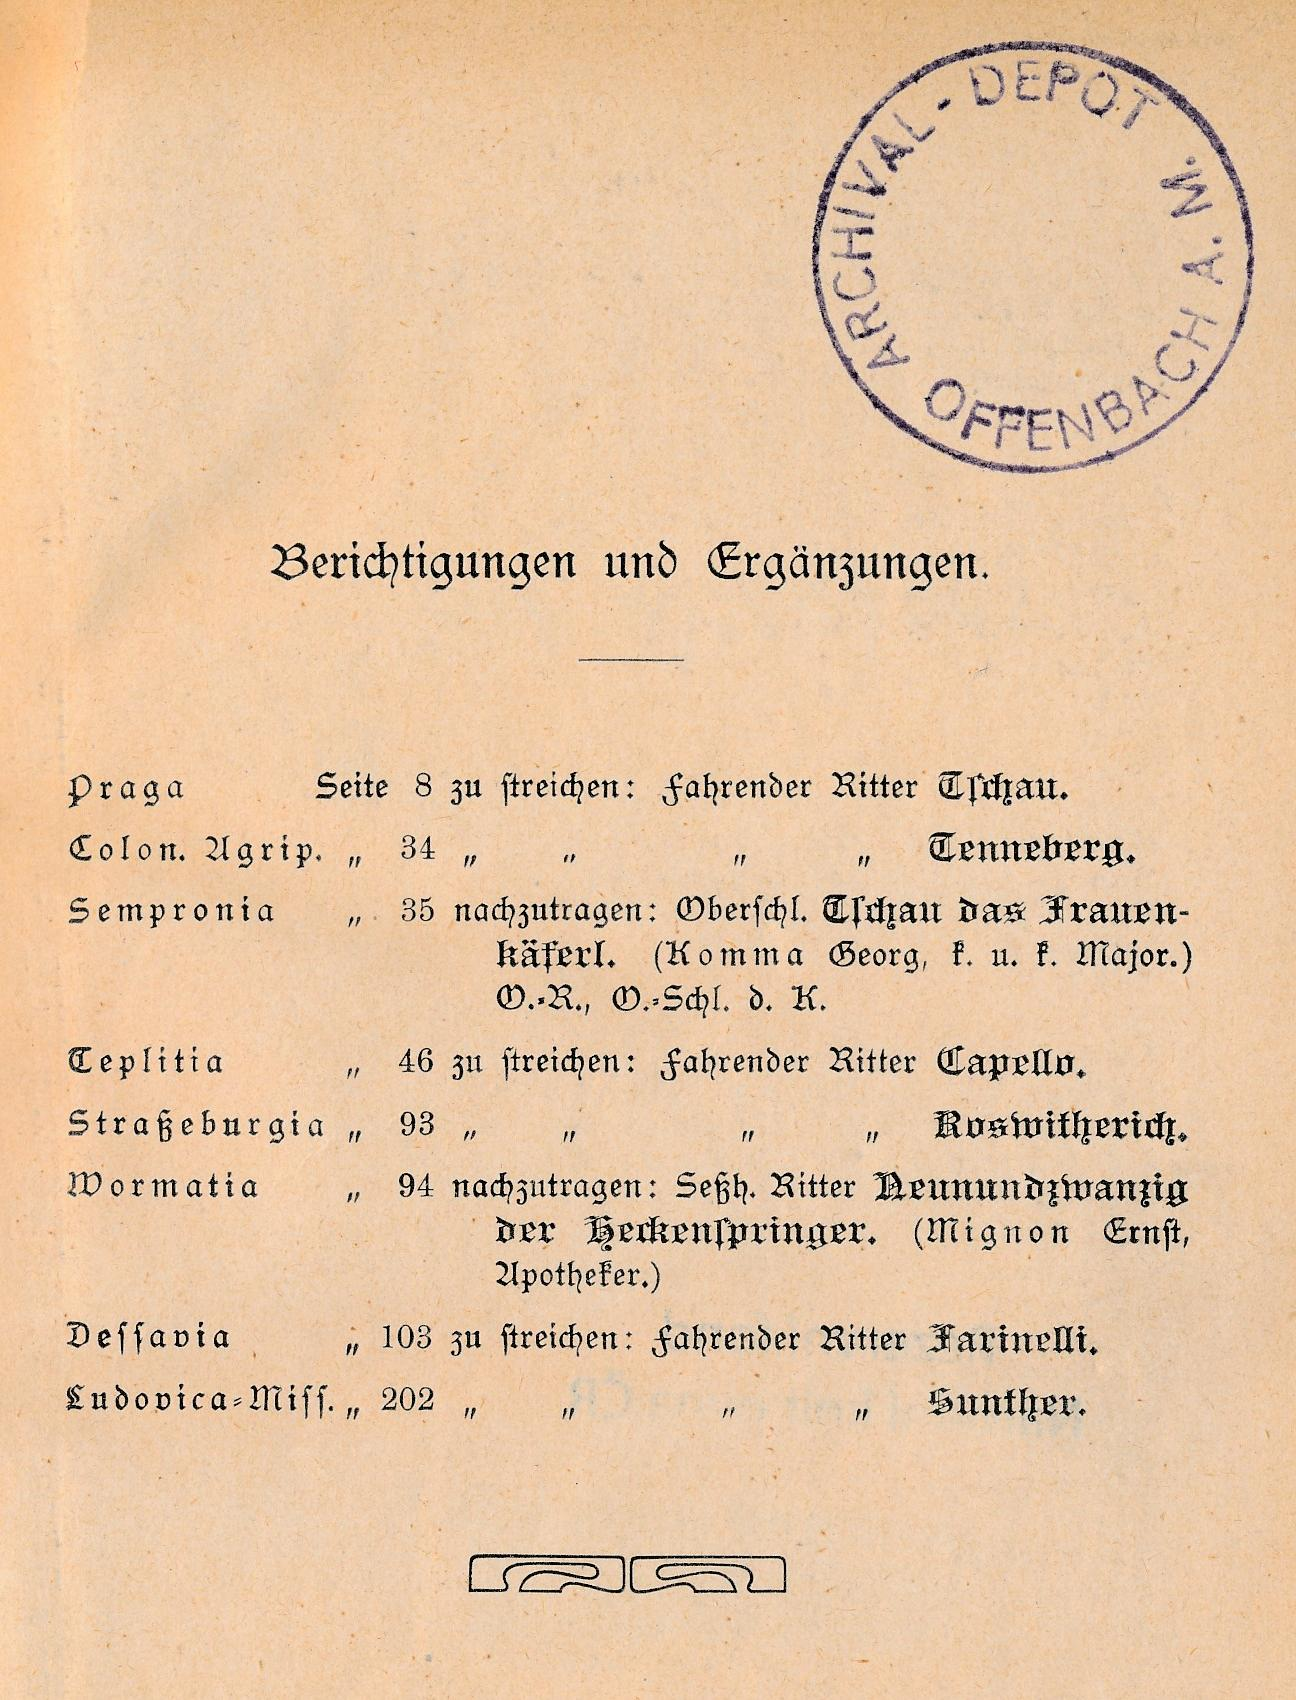 Razítko Offenbach Archival Depot